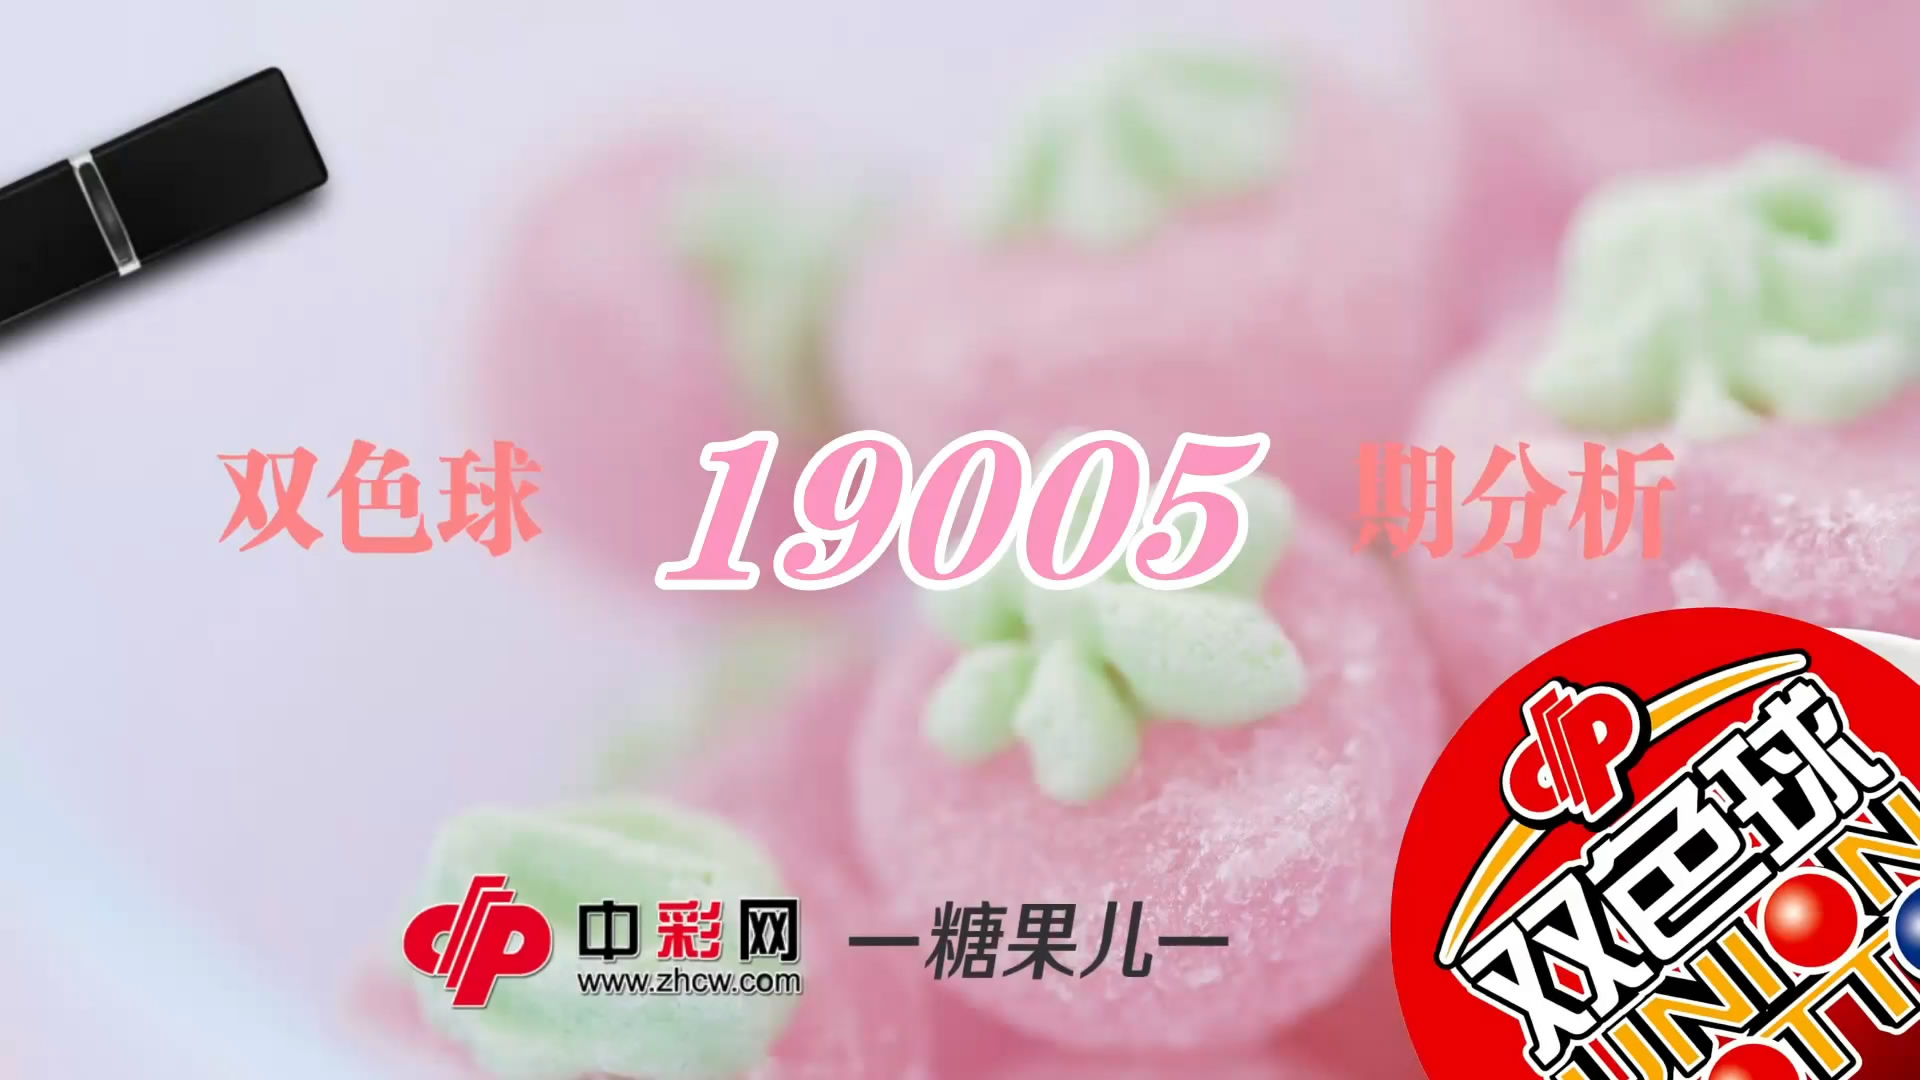 【中彩视频】糖果儿双色球第19005期